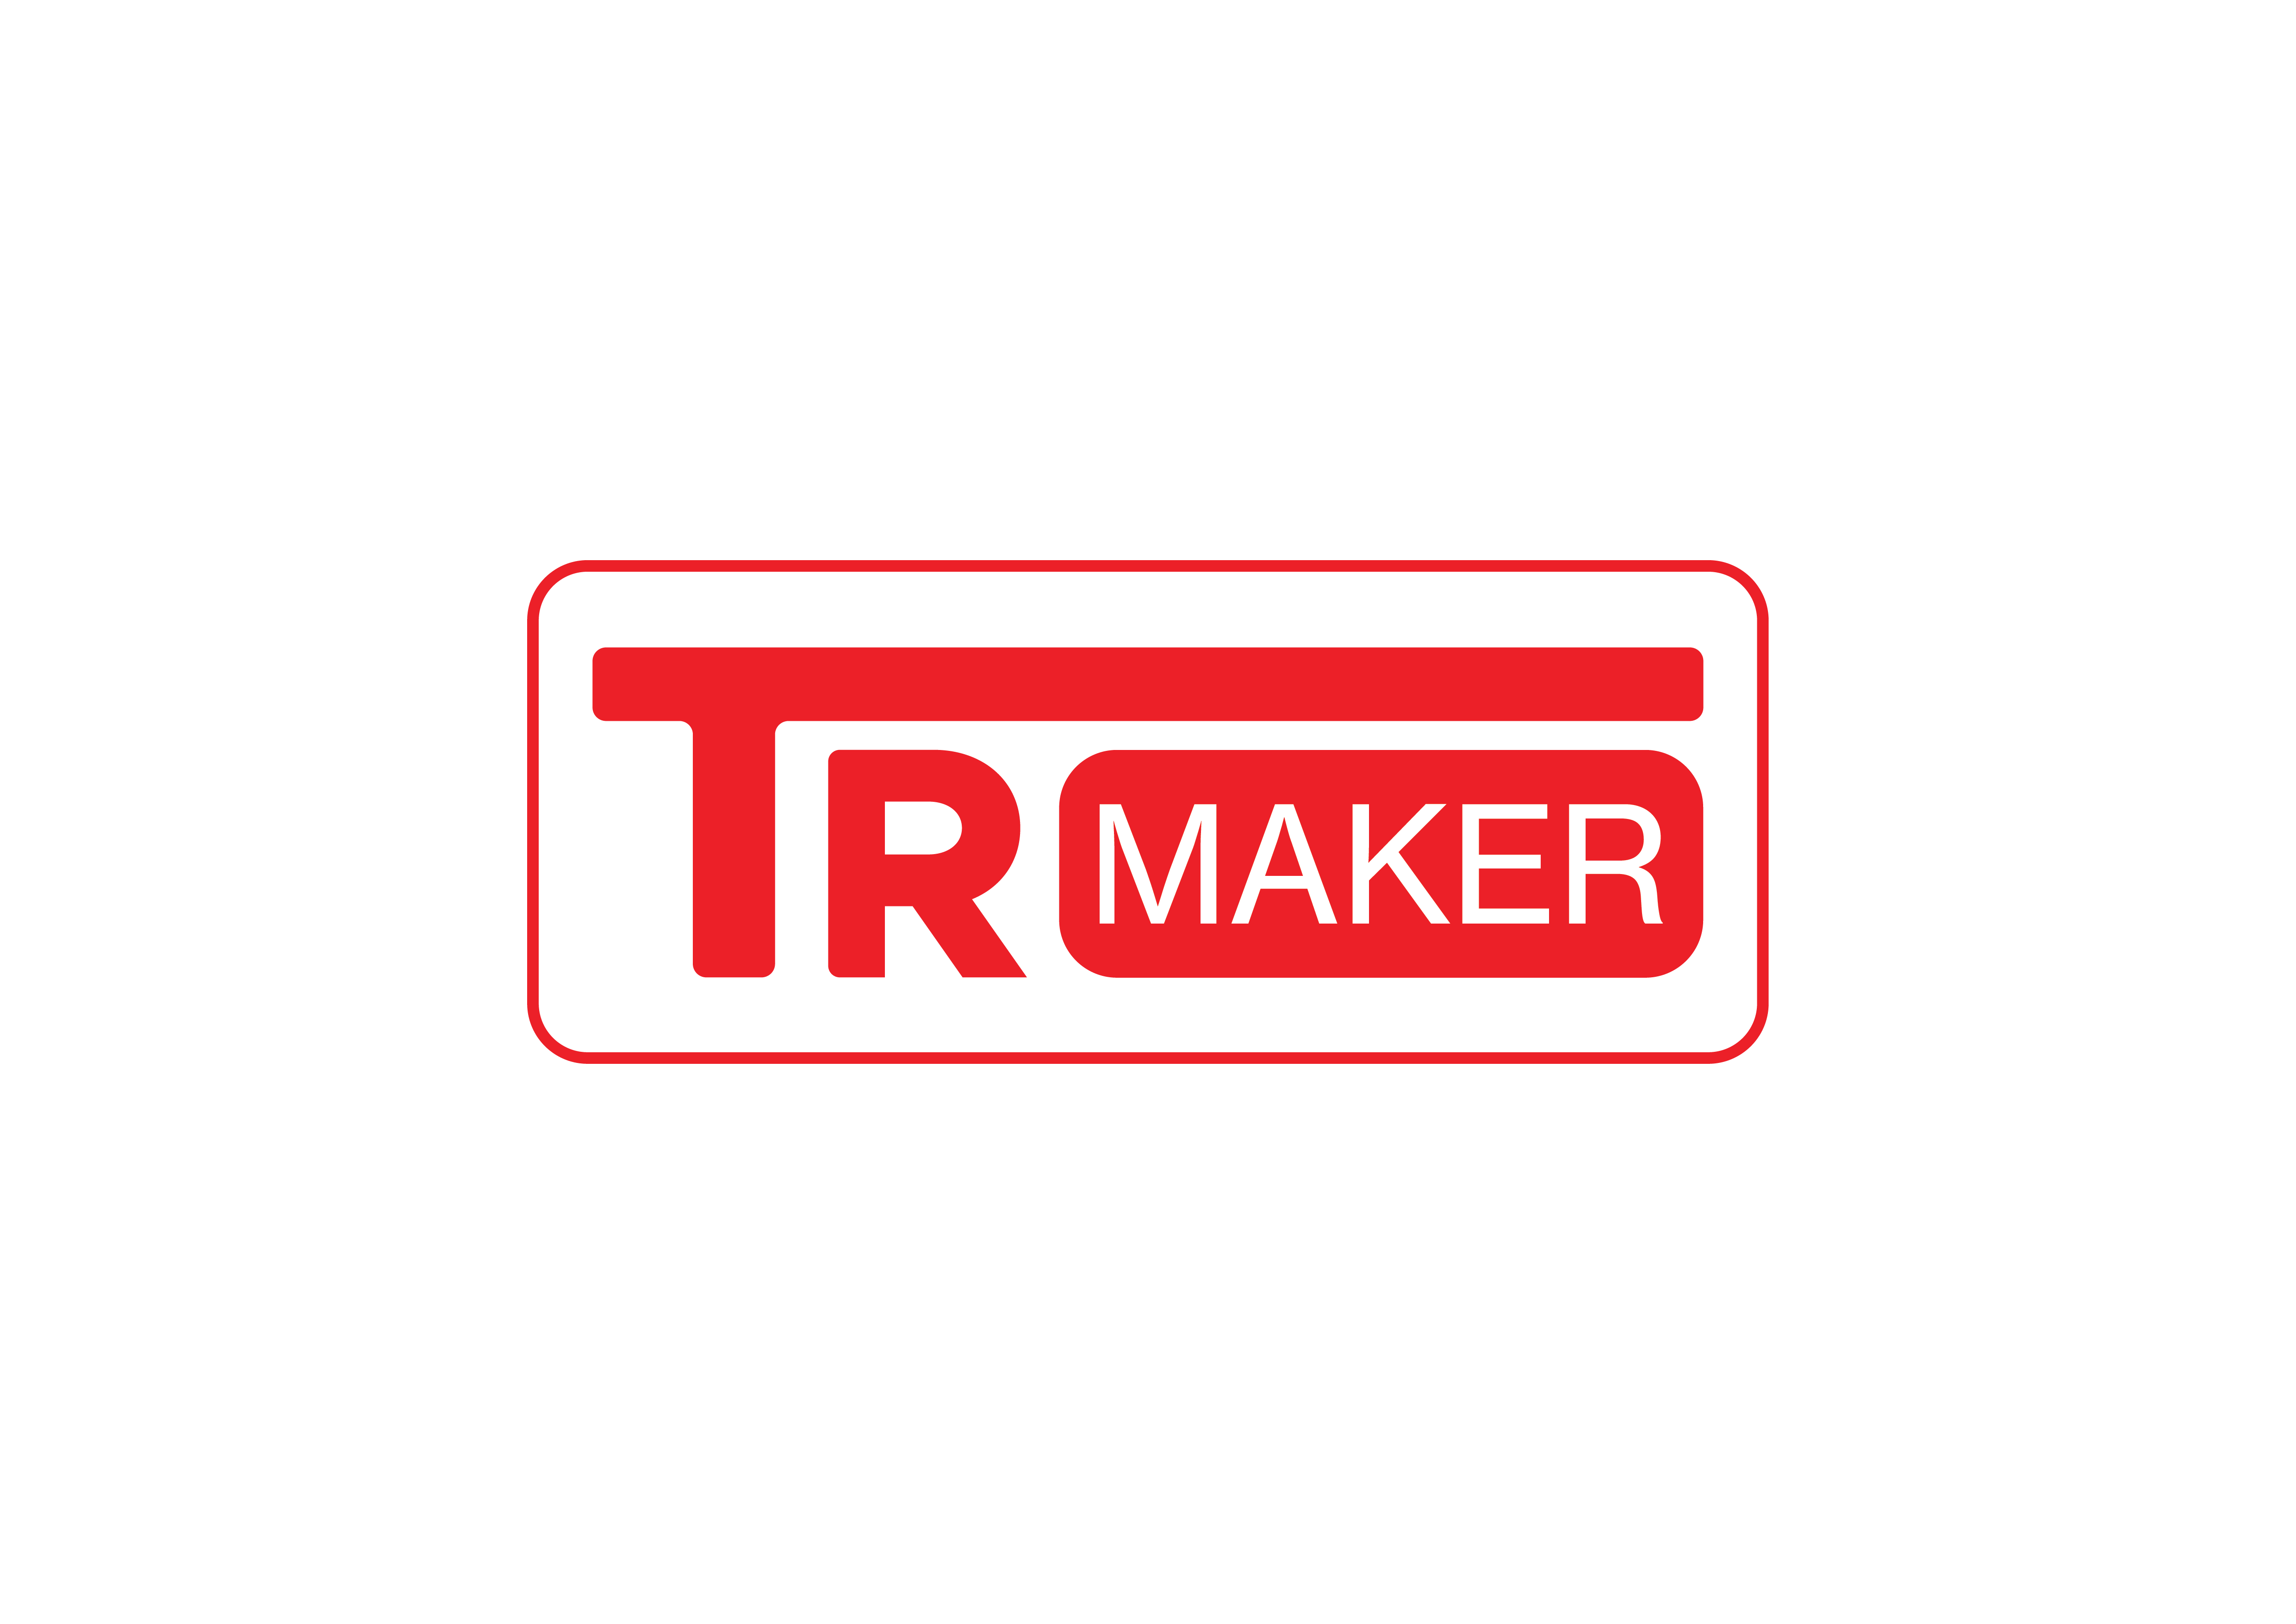 TR Maker